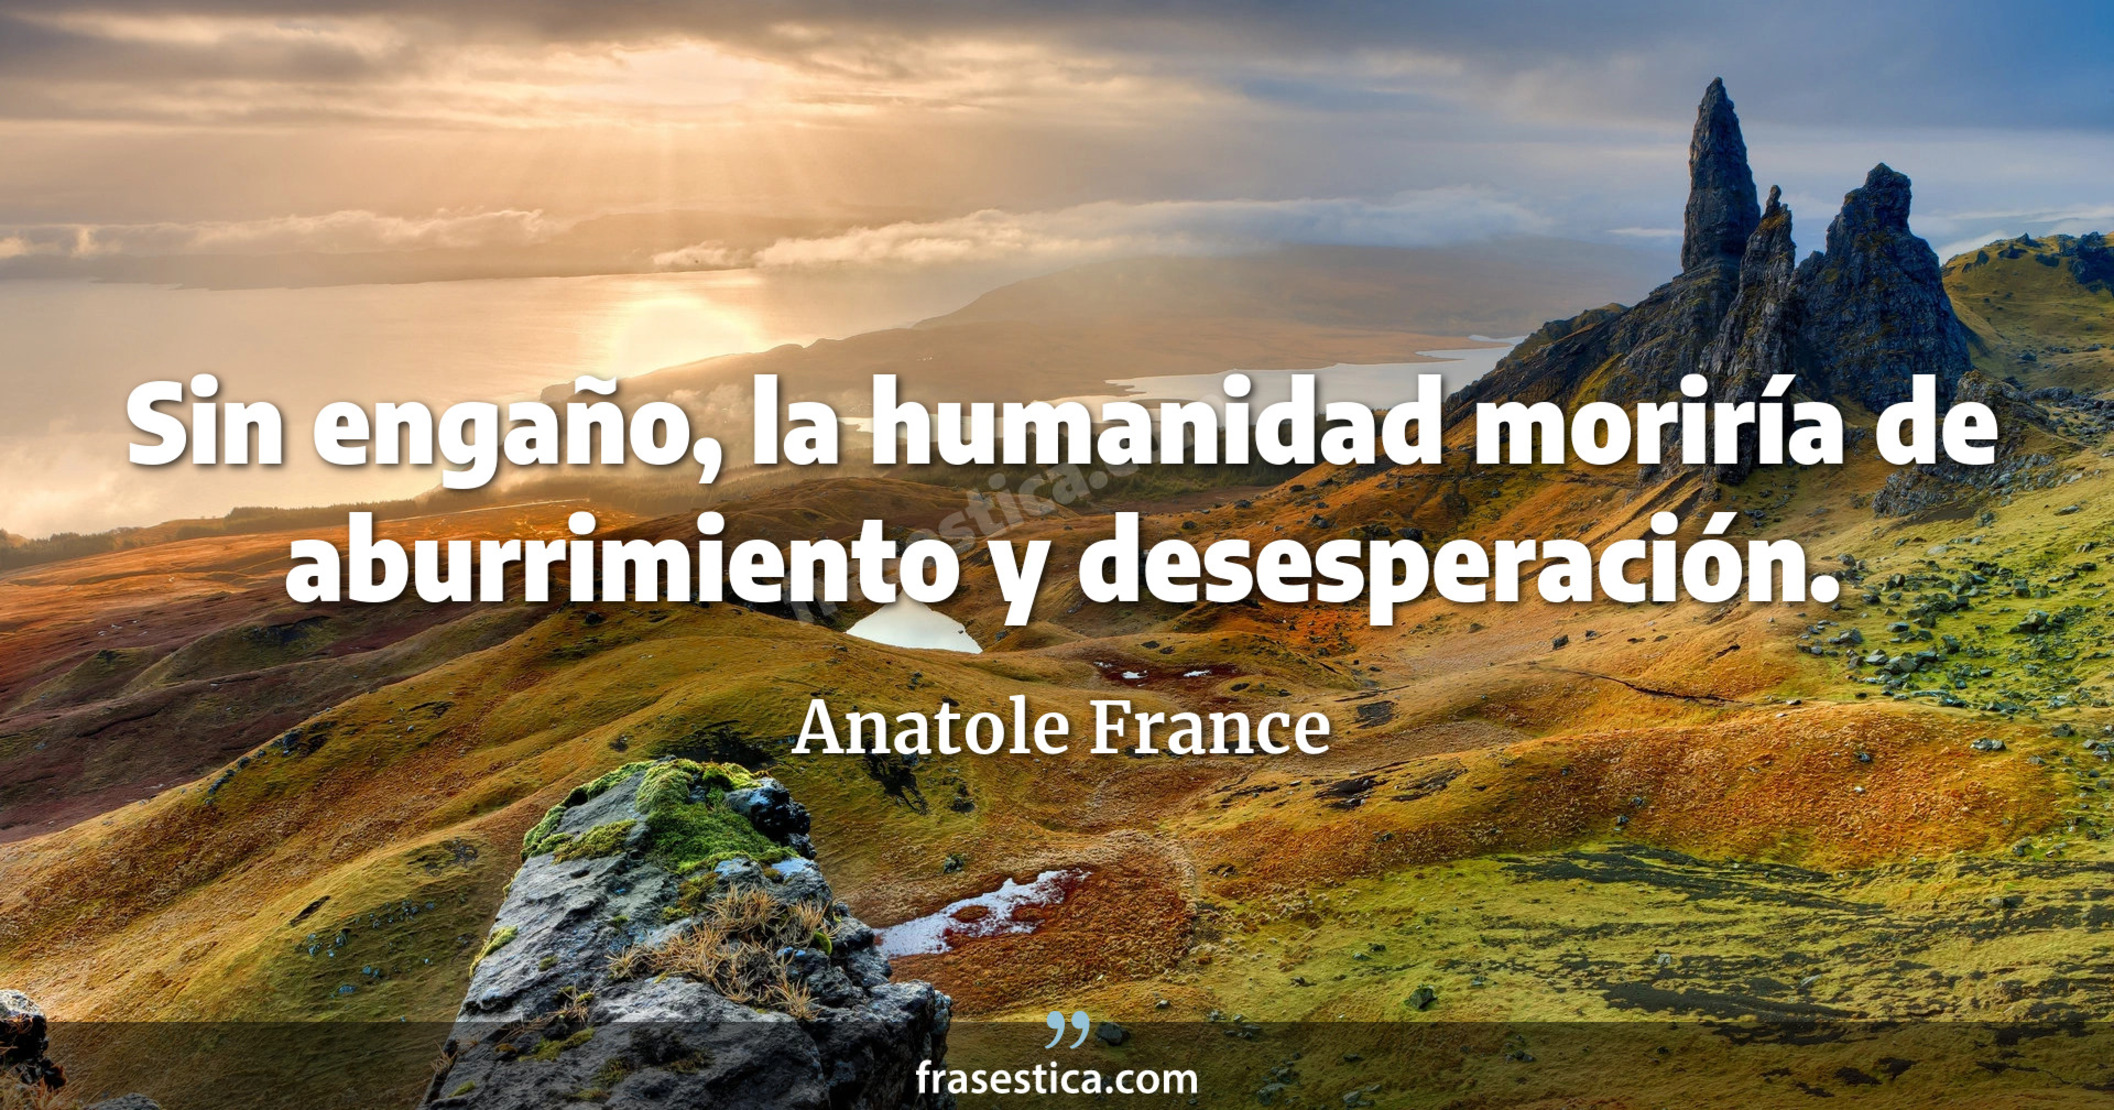 Sin engaño, la humanidad moriría de aburrimiento y desesperación. - Anatole France